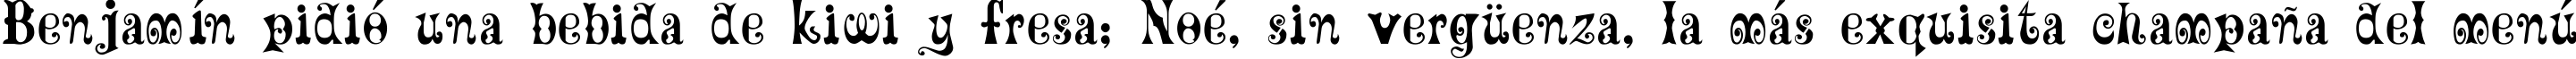 Пример написания шрифтом MaxCircus текста на испанском